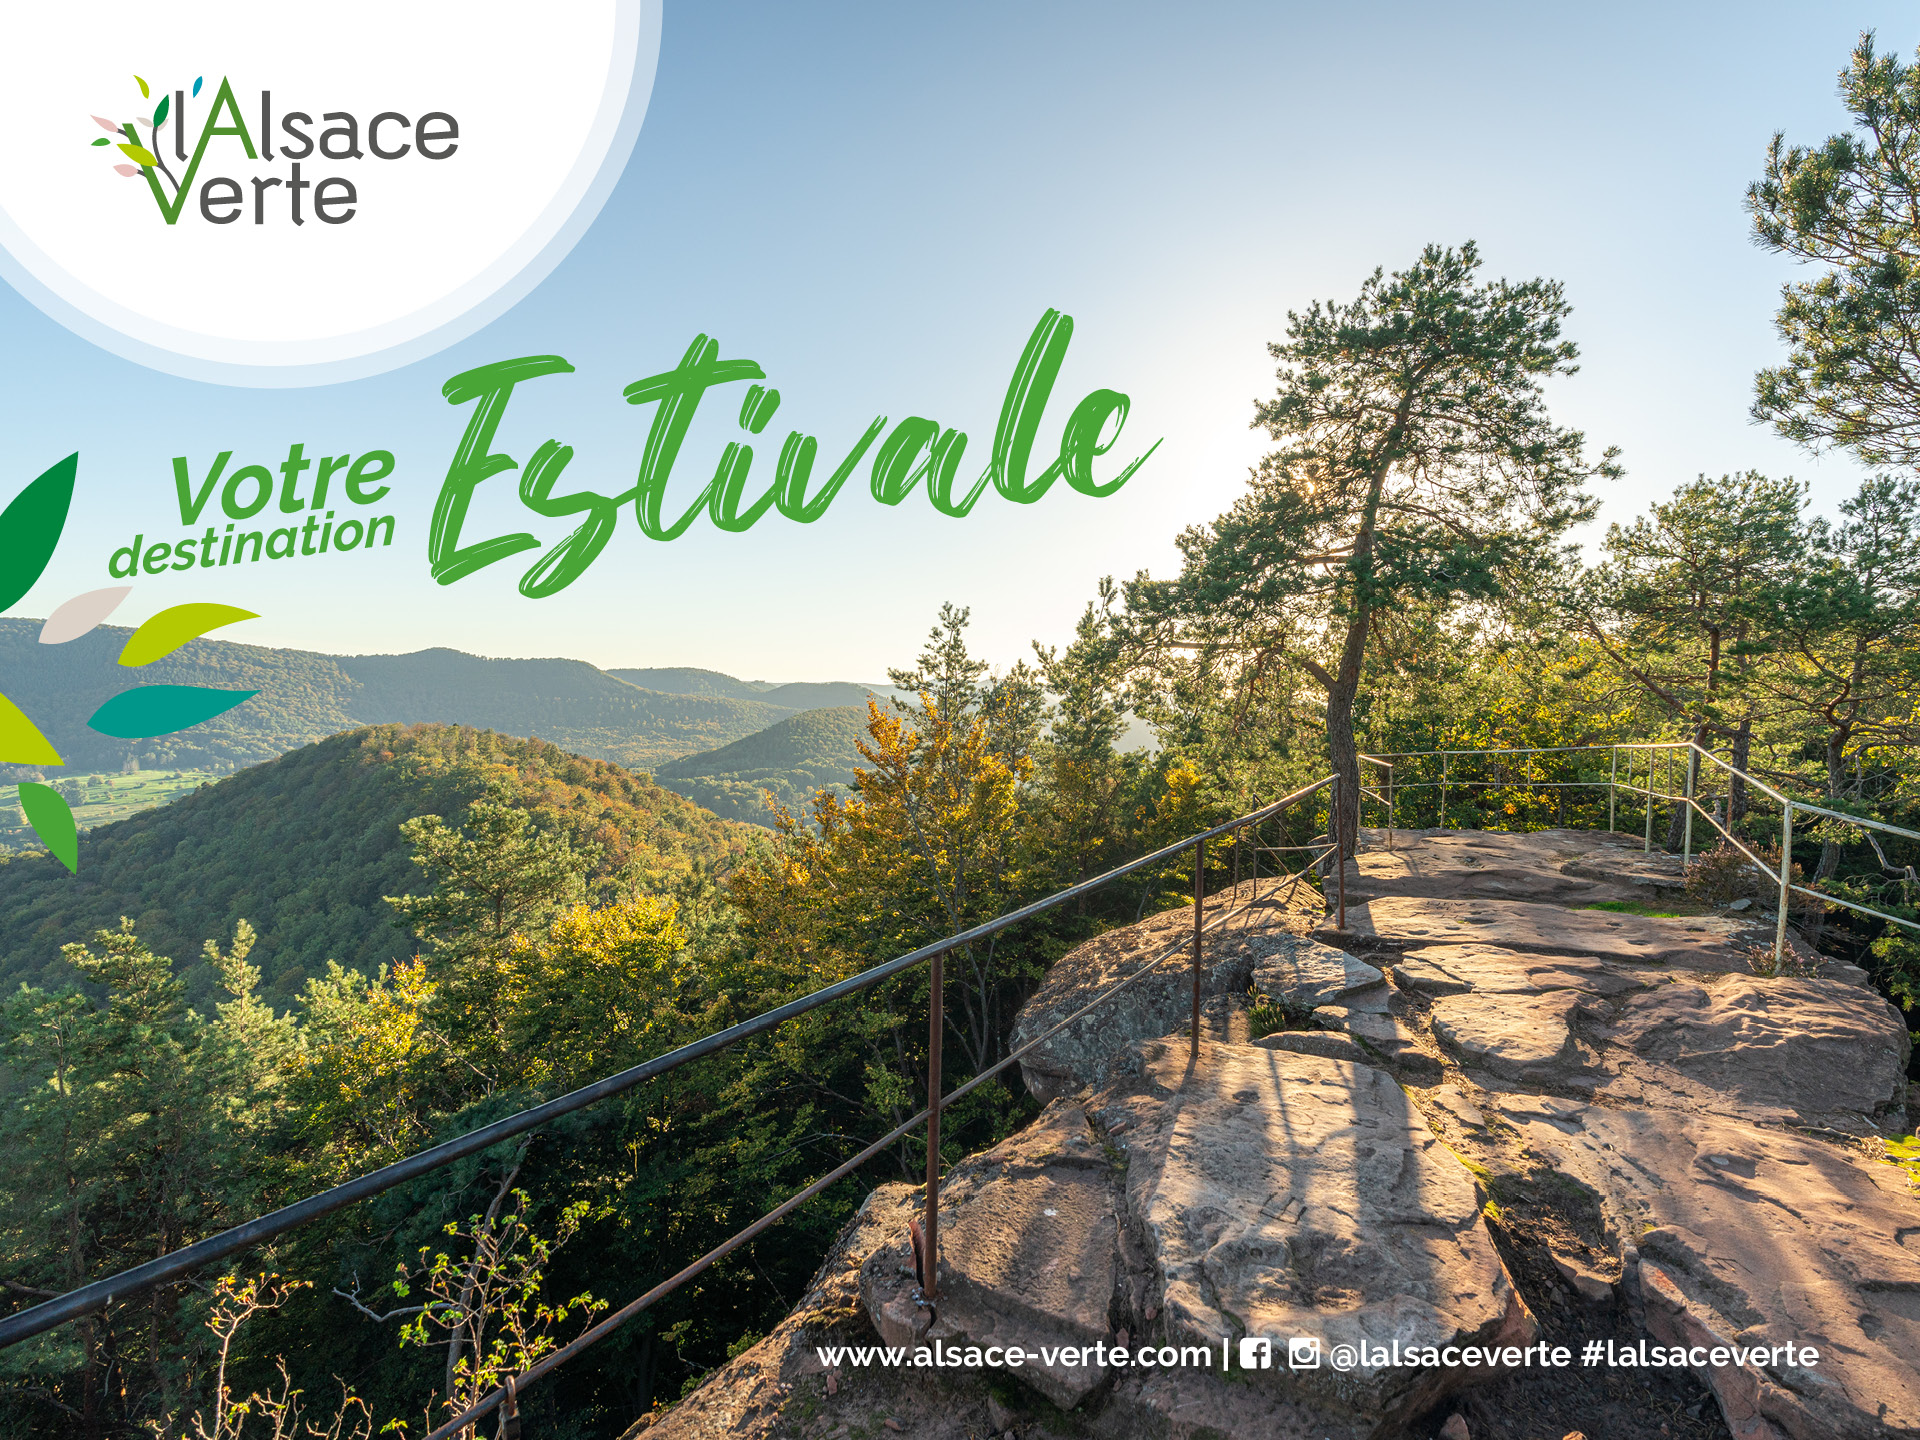 Campagne publicitaire touristique estivale pour le territoire de l'Alsace Verte